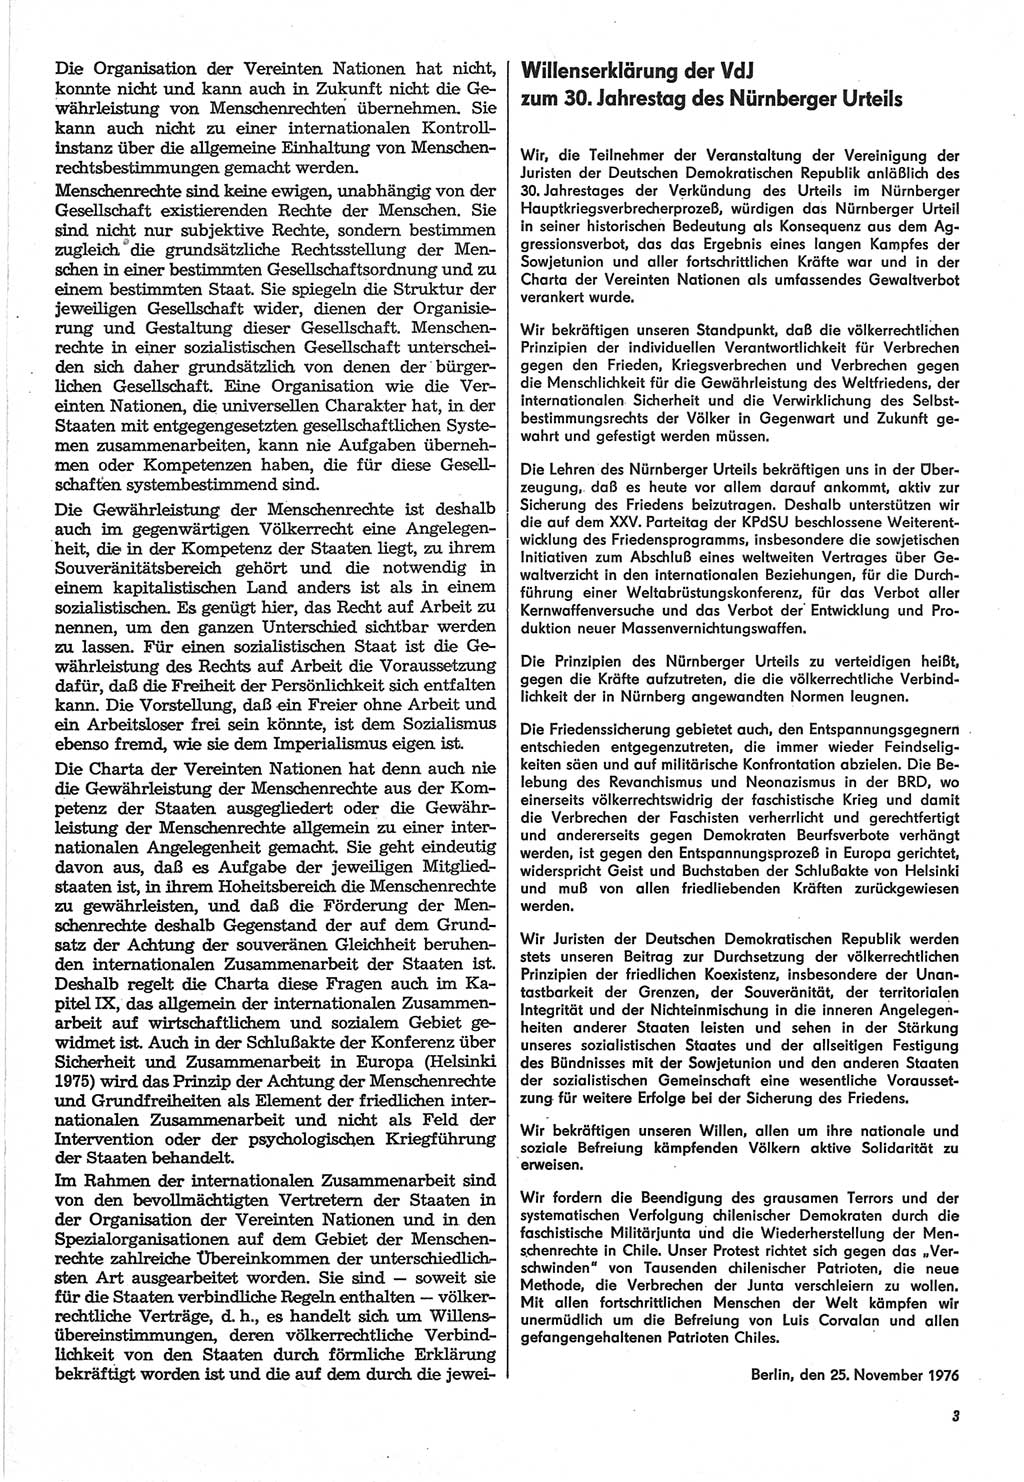 Neue Justiz (NJ), Zeitschrift für Recht und Rechtswissenschaft-Zeitschrift, sozialistisches Recht und Gesetzlichkeit, 31. Jahrgang 1977, Seite 3 (NJ DDR 1977, S. 3)